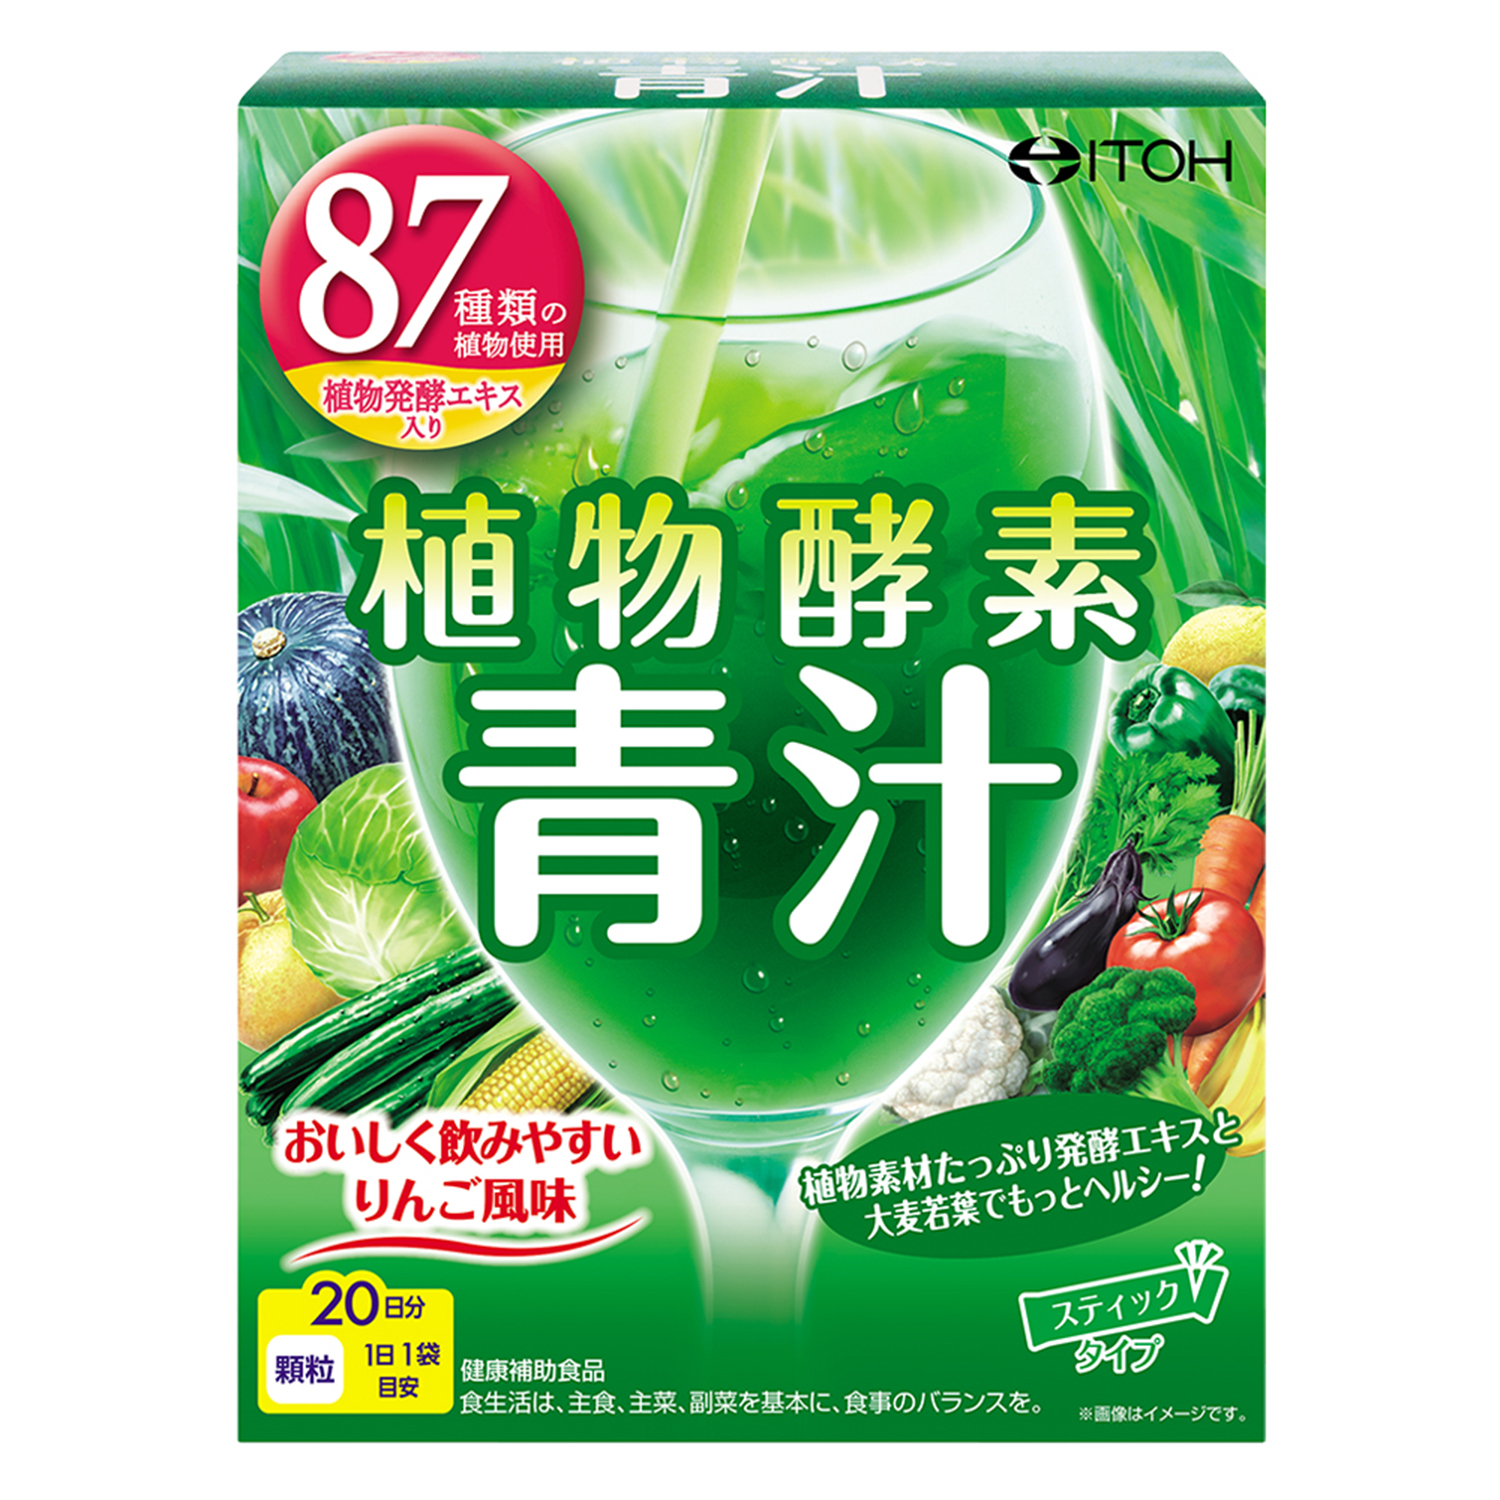 植物酵素青汁 | 健康食品のことなら井藤漢方製薬